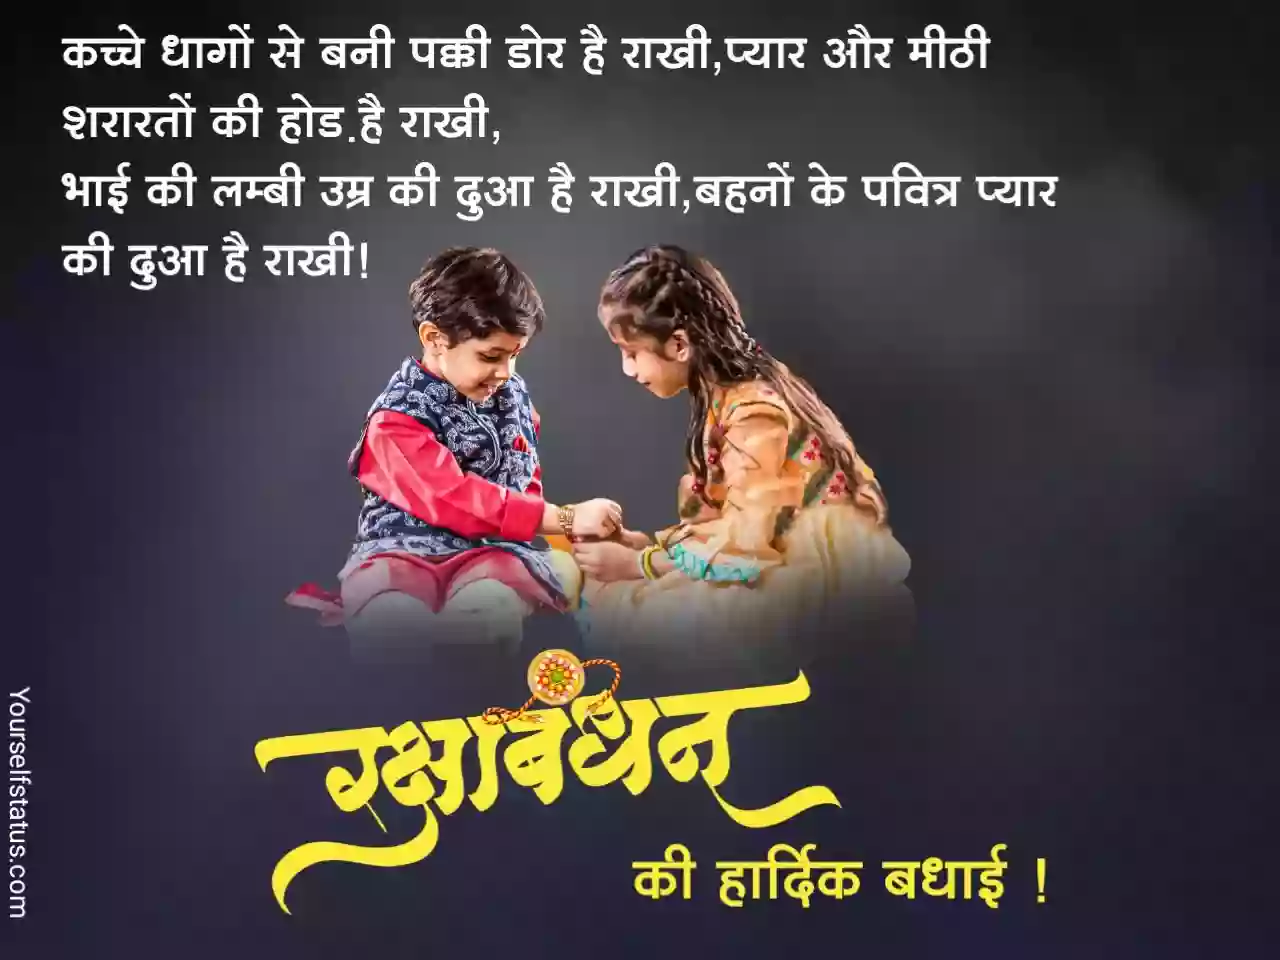 Raksha bandhan messages in hindi